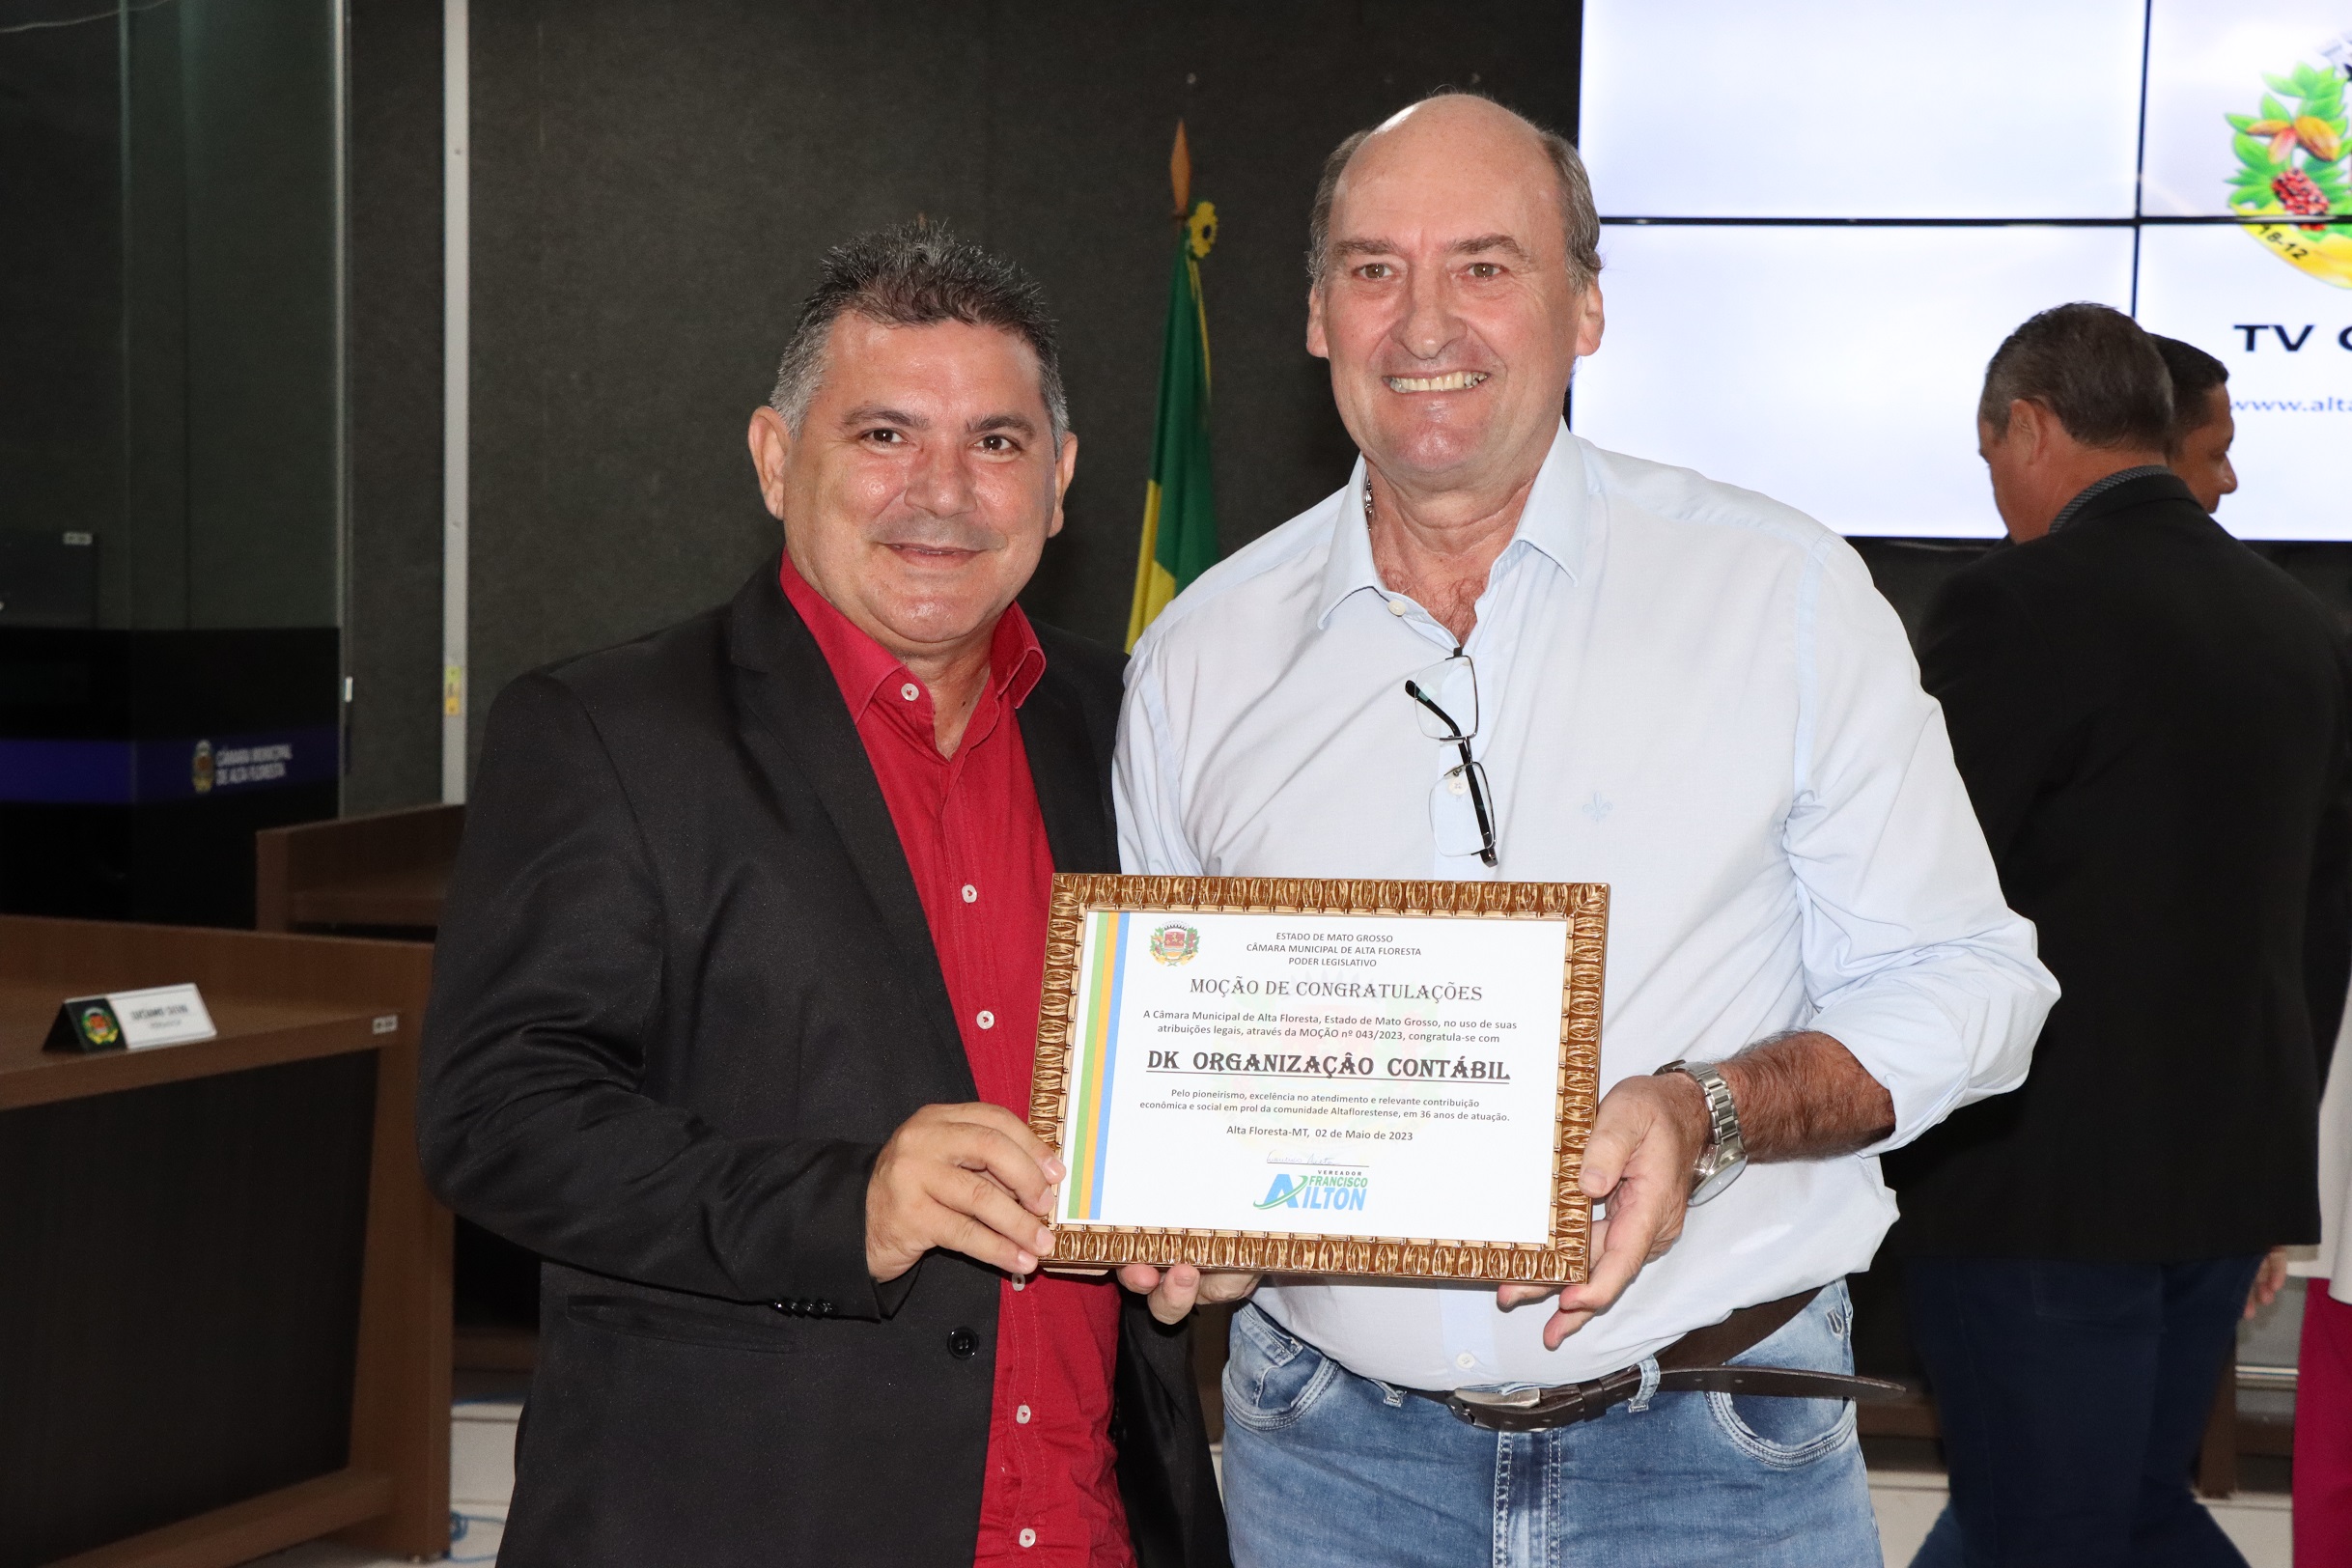 Vereador Francisco Ailton homenageia DK Organização Contábil com Moção de Congratulações